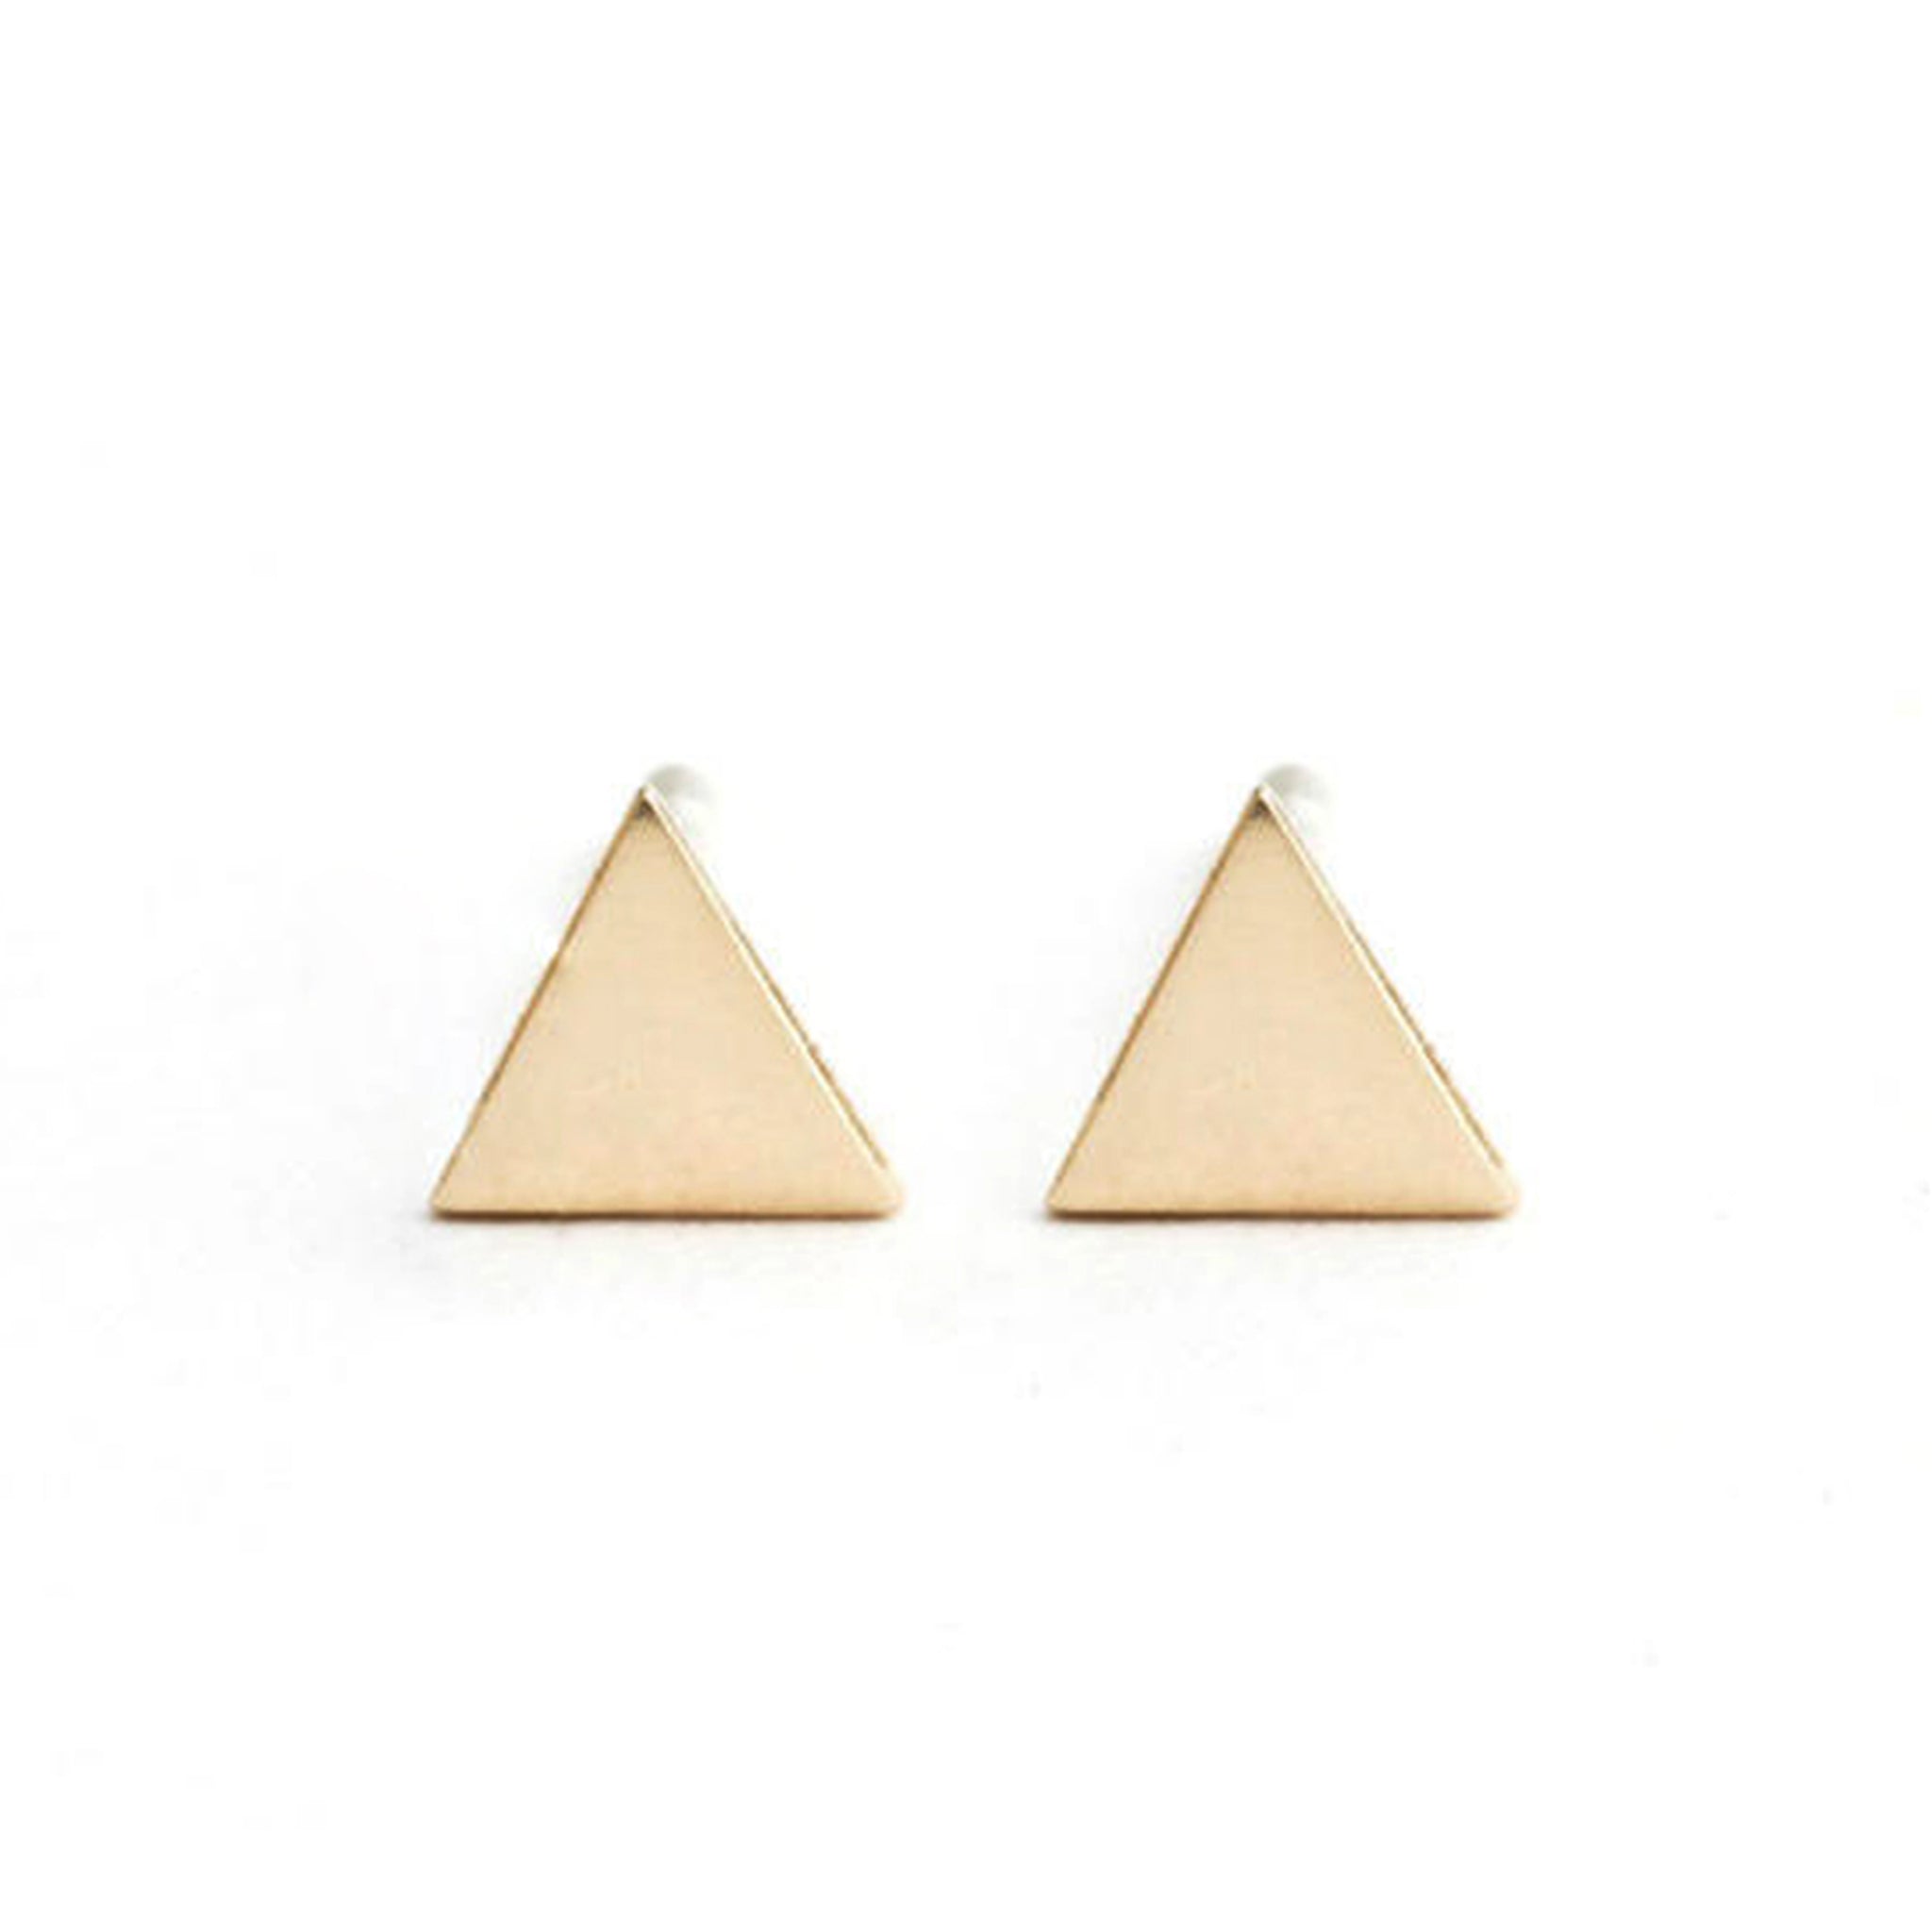 Equilateral Stud Earrings - Isobell Designs - Earrings - handmade ...